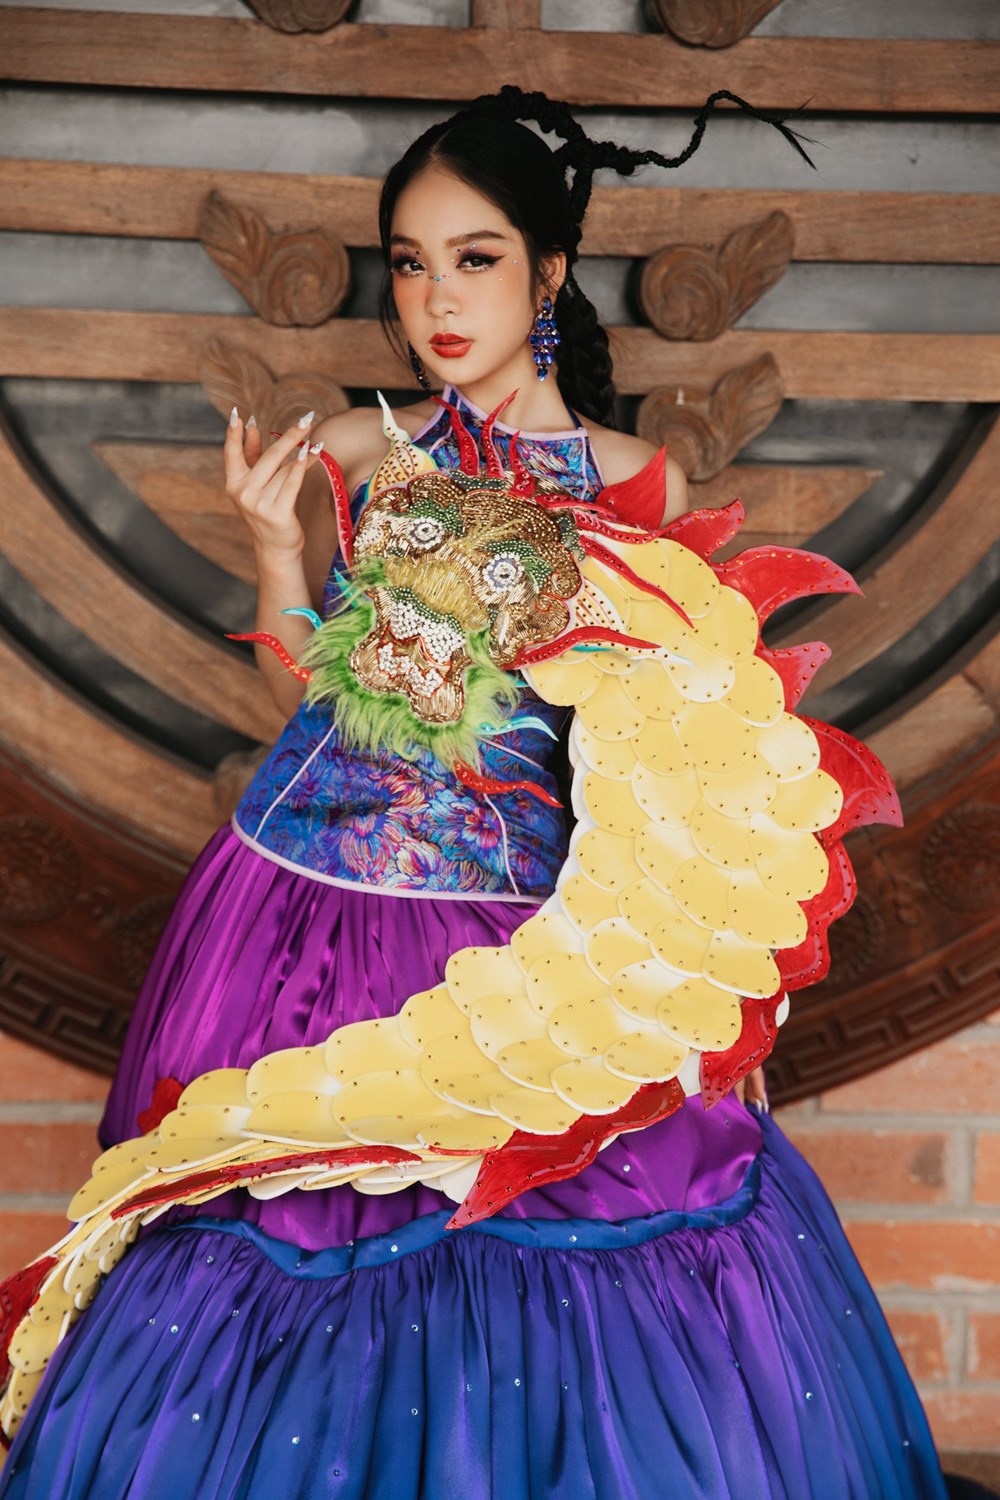 Hoa hậu nhí Hồng Lam ấn tượng với trang phục gắn rồng vàng 3D - ảnh 2